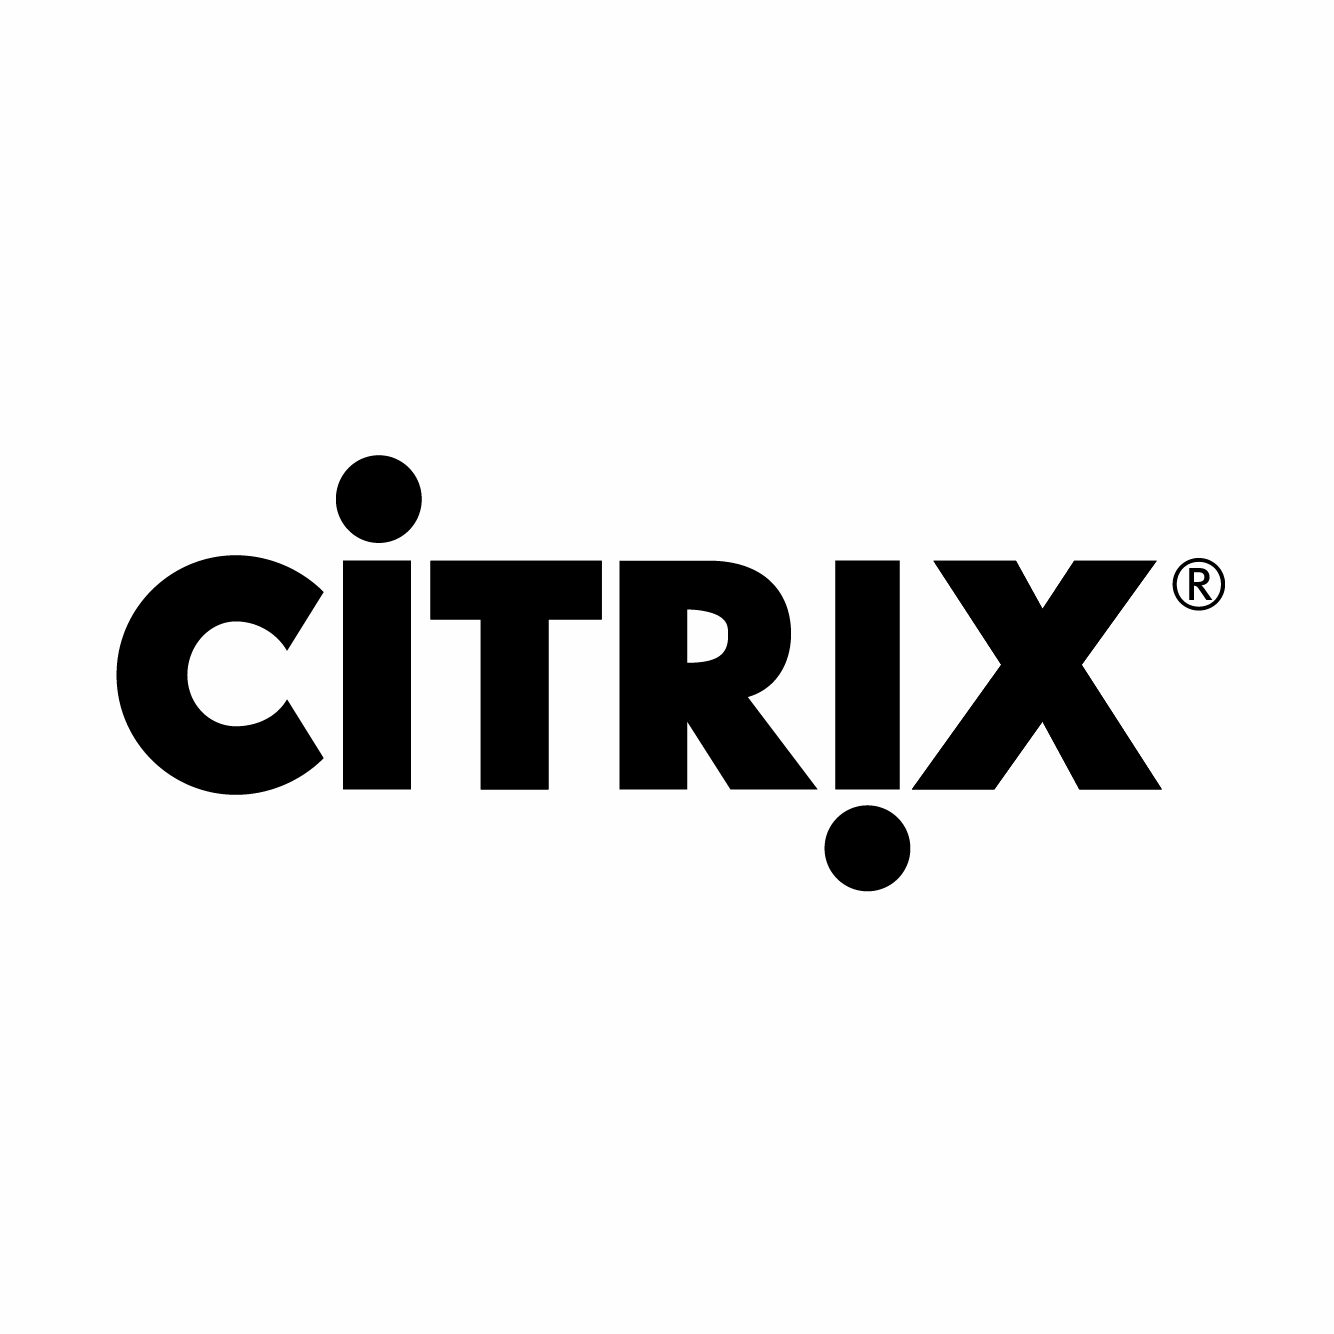 http://securetech.ae/wp-content/uploads/2019/02/12.CITRIX.png